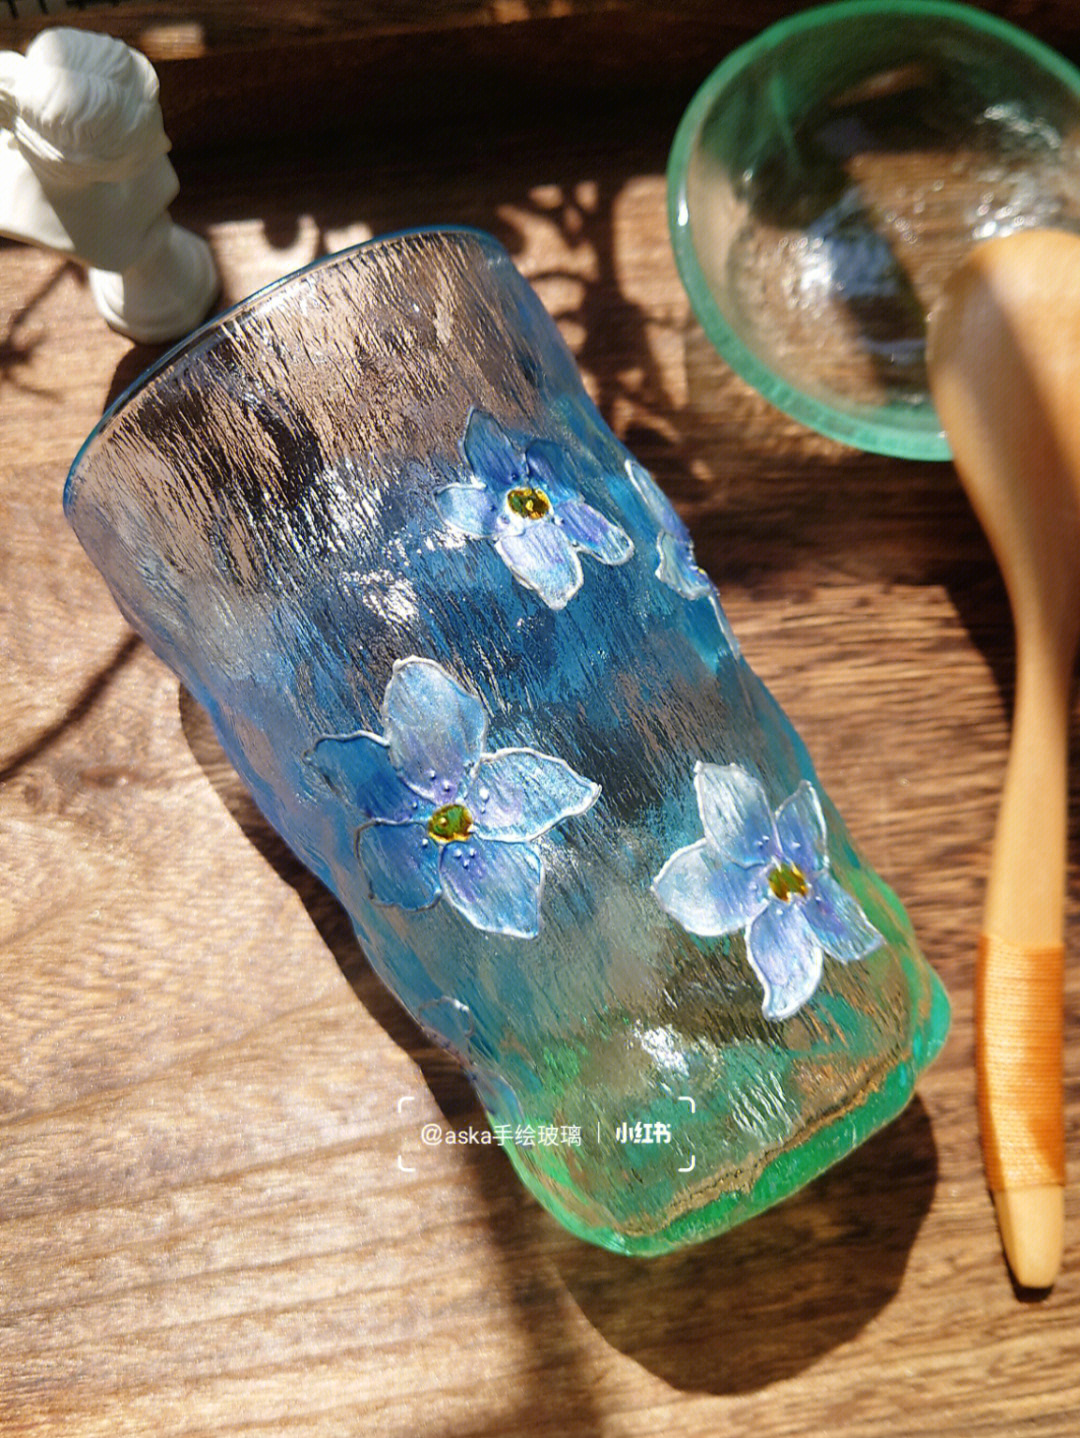 蓝色小飞燕手绘玻璃杯原创蓝色系